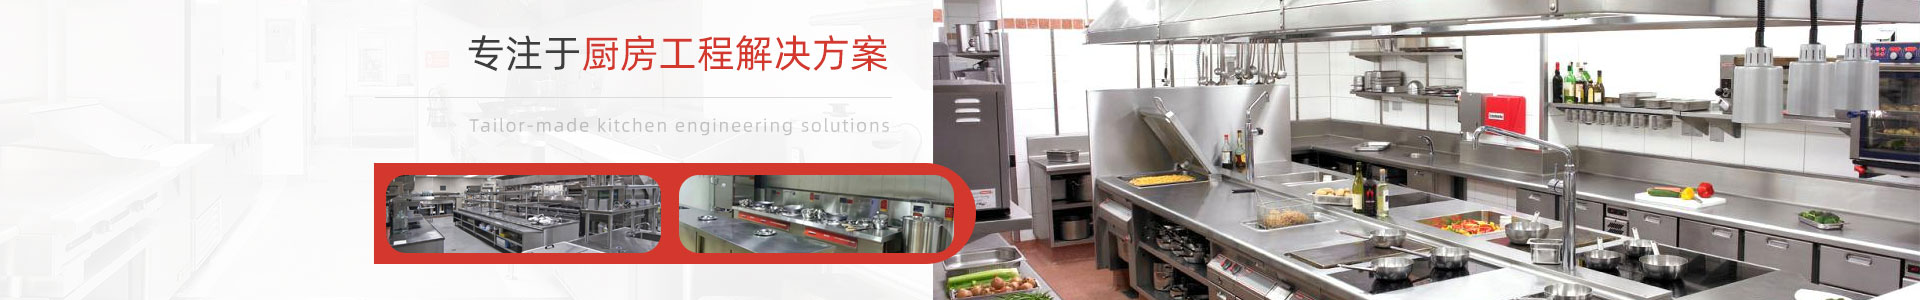 深圳市宏润厨房设备有限公司-连锁餐饮厨房工程案例